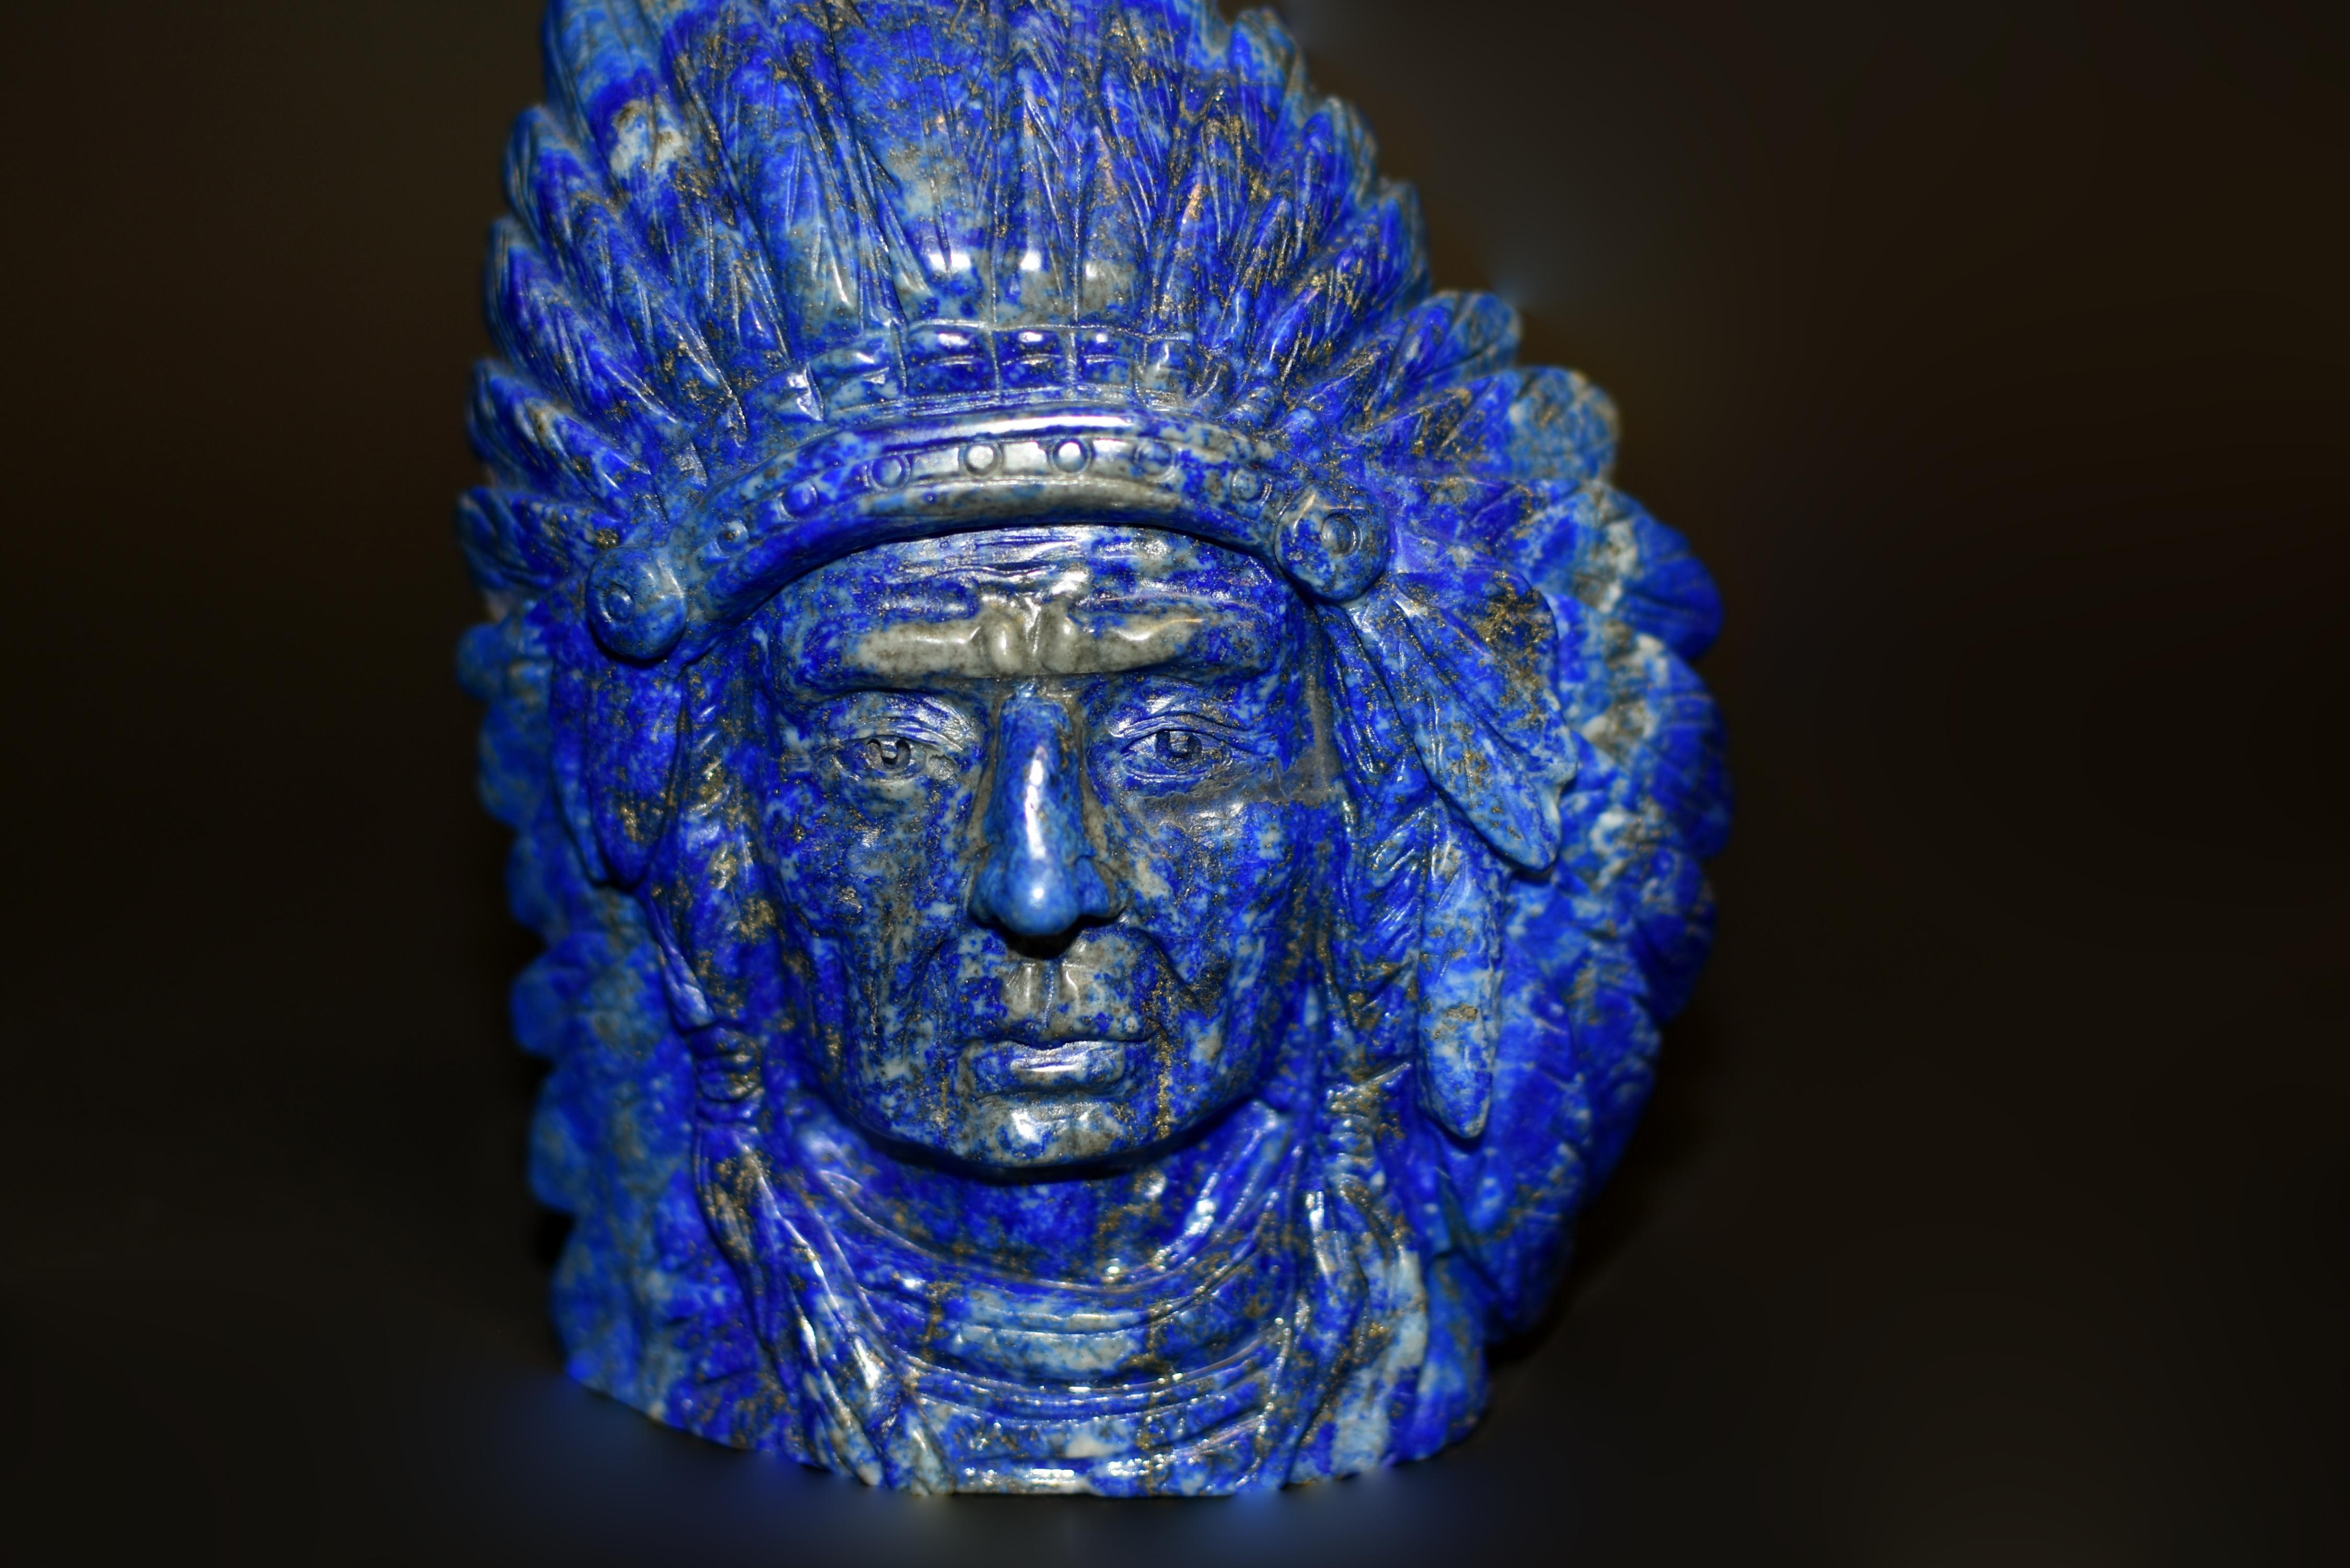 Nous avons découvert et, grâce à des efforts extraordinaires, acquis cette rare statue de chef indien en lapis-lazuli, qui capture l'essence d'un chef amérindien paré de sa magnifique coiffe de plumes. Les traits du visage du chef sont finement